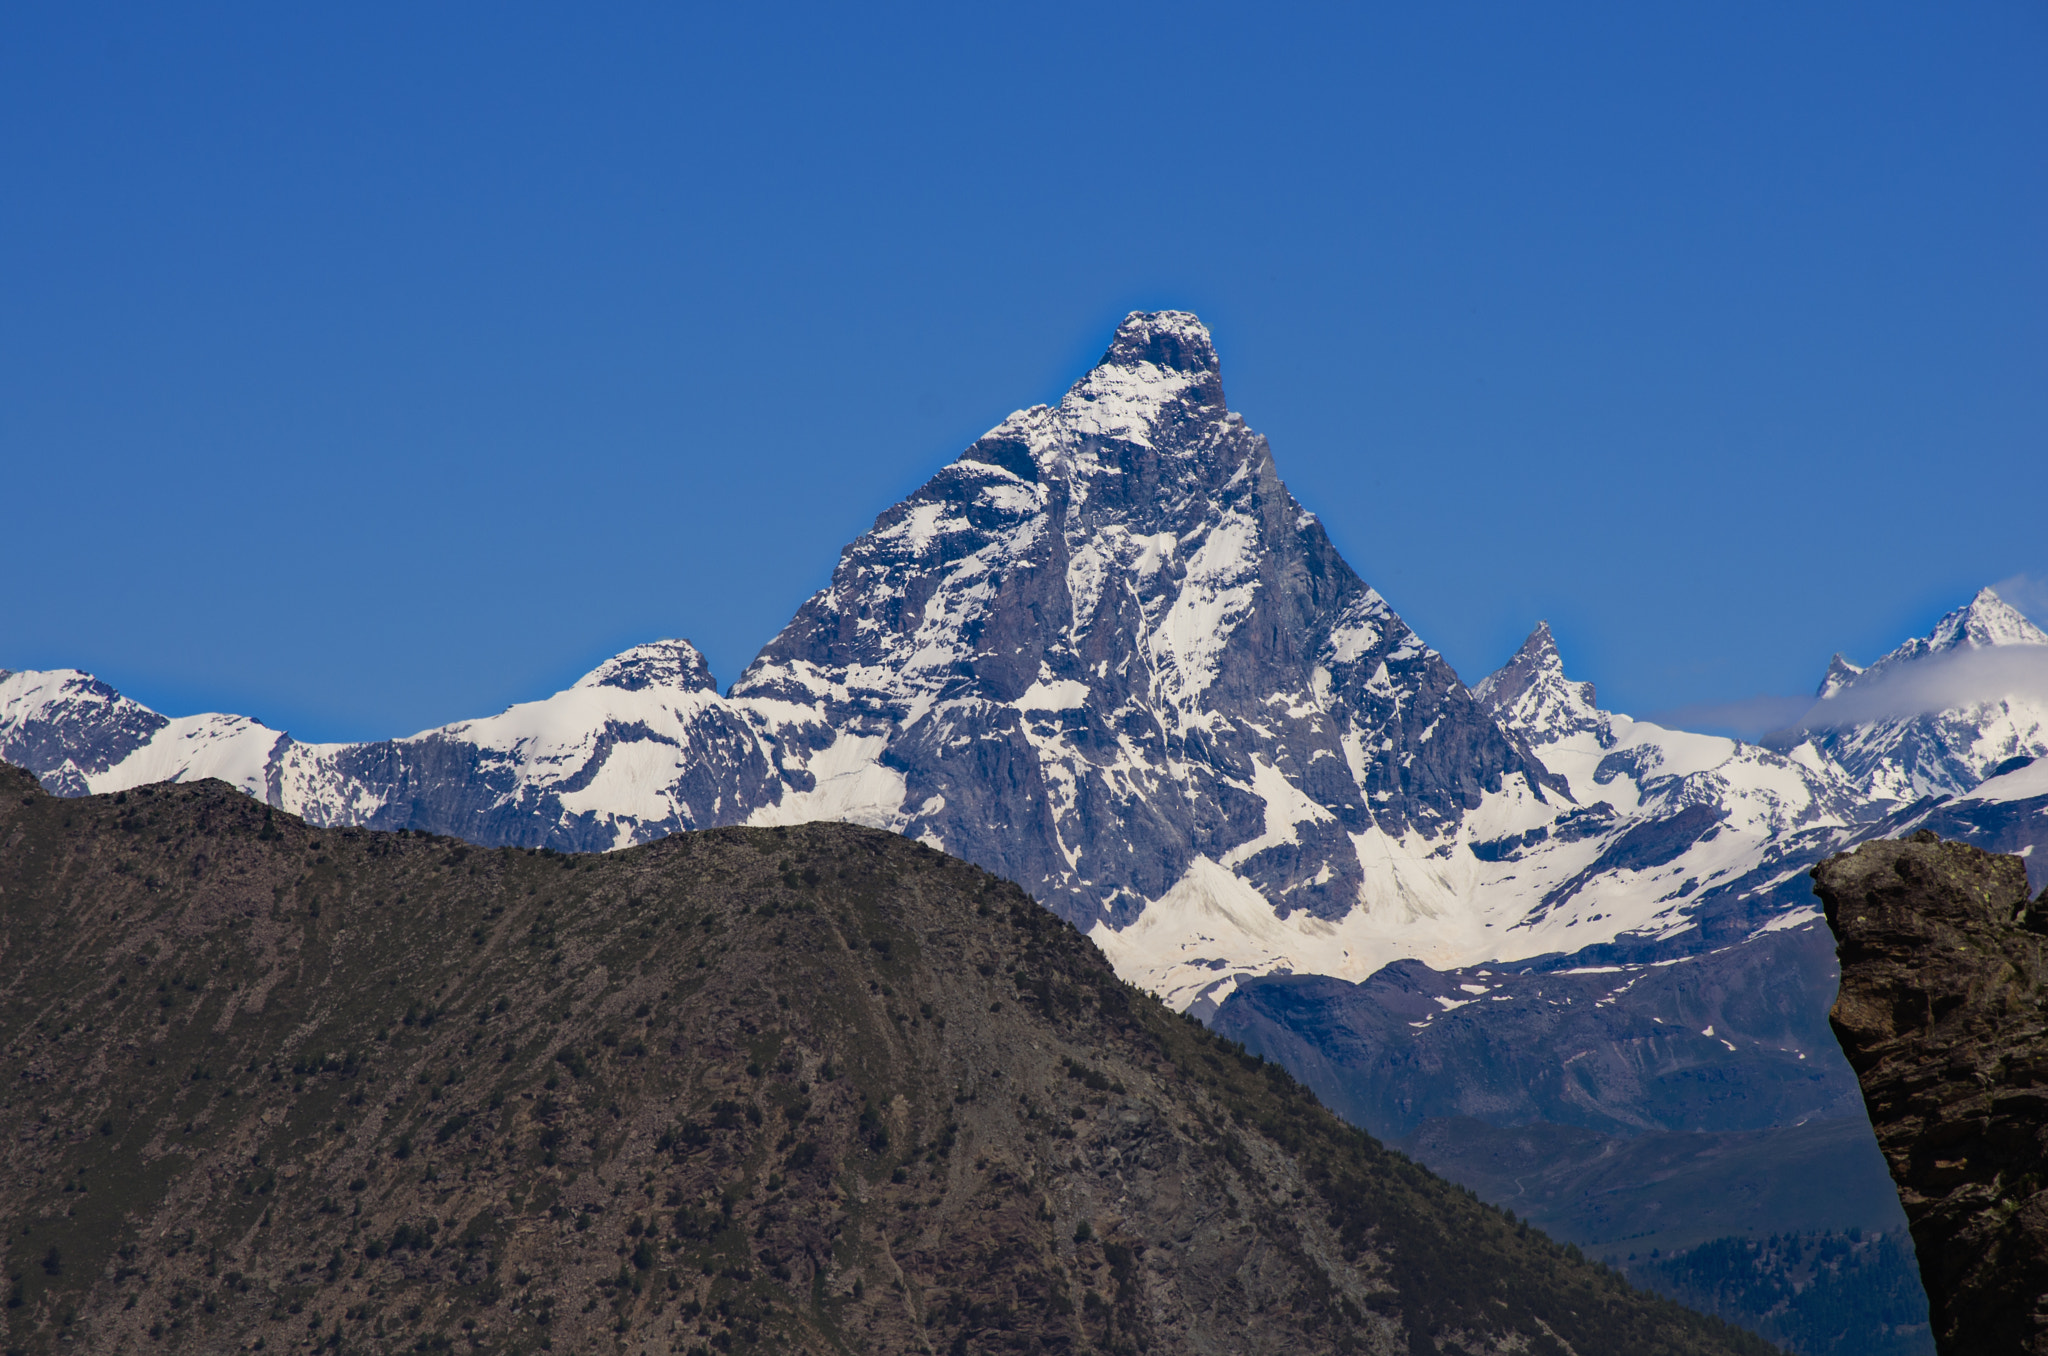 Pentax K-5 sample photo. Matterhorn photography